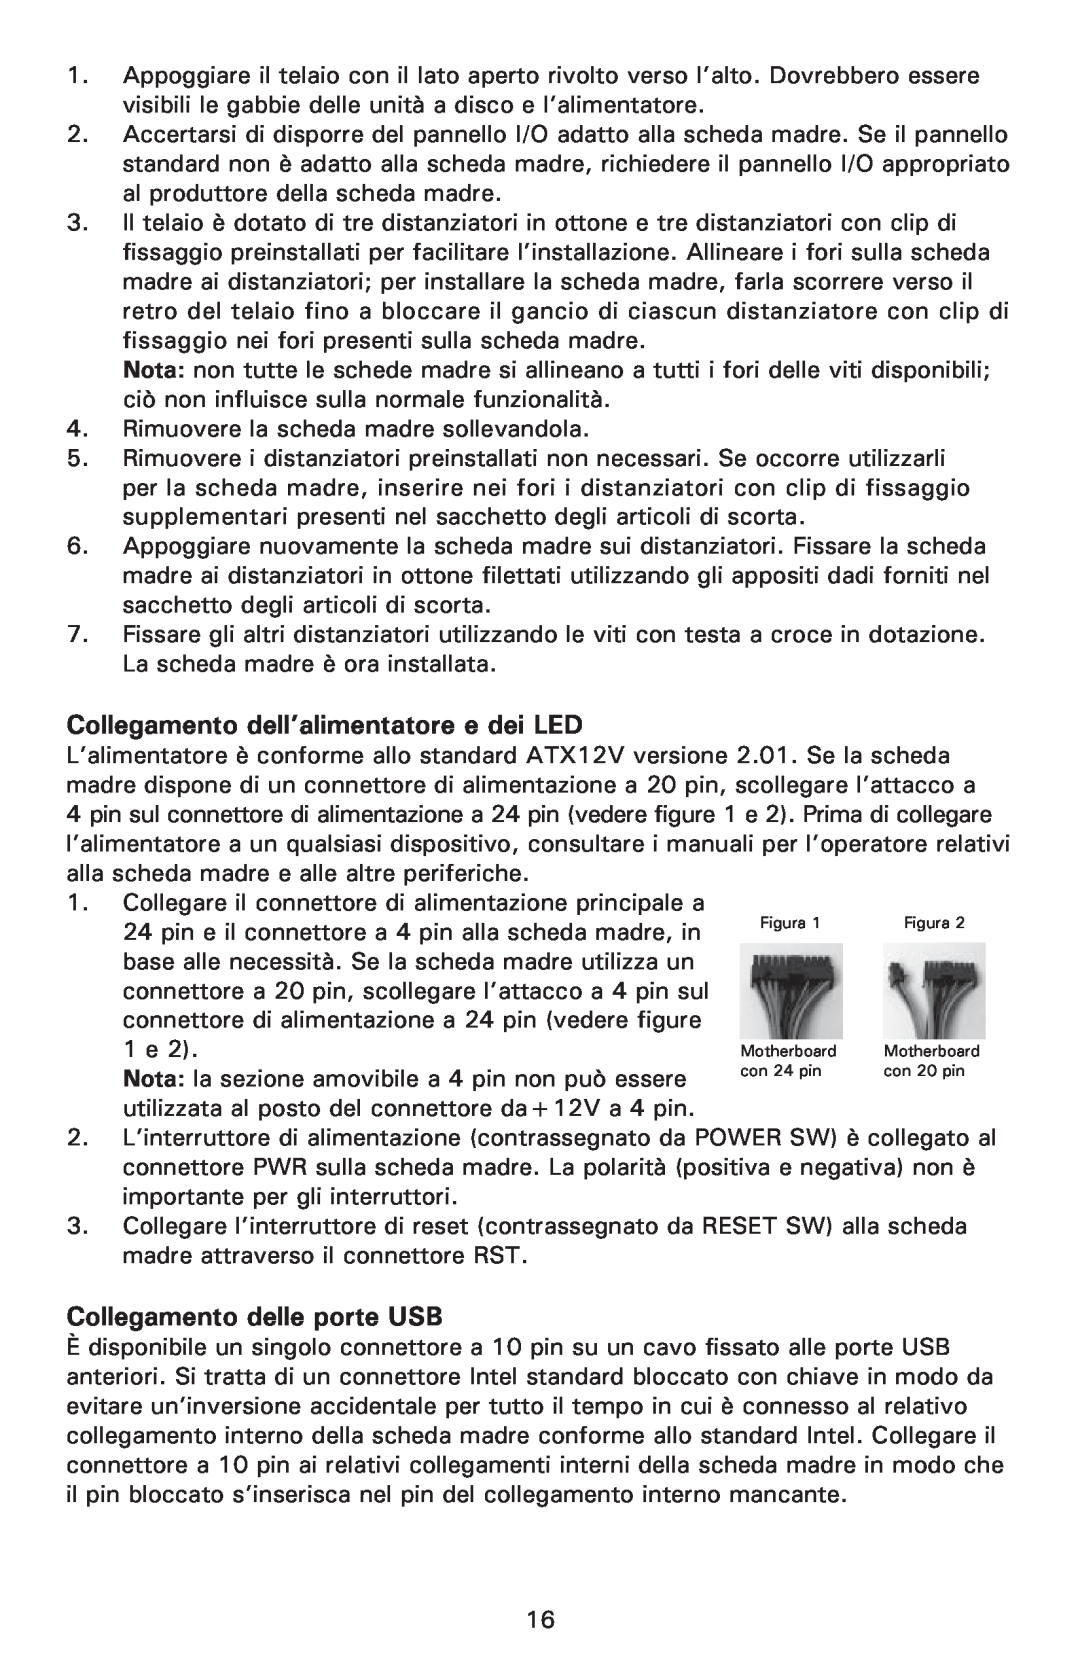 Antec NSK 1380 user manual Collegamento dell’alimentatore e dei LED, Collegamento delle porte USB 